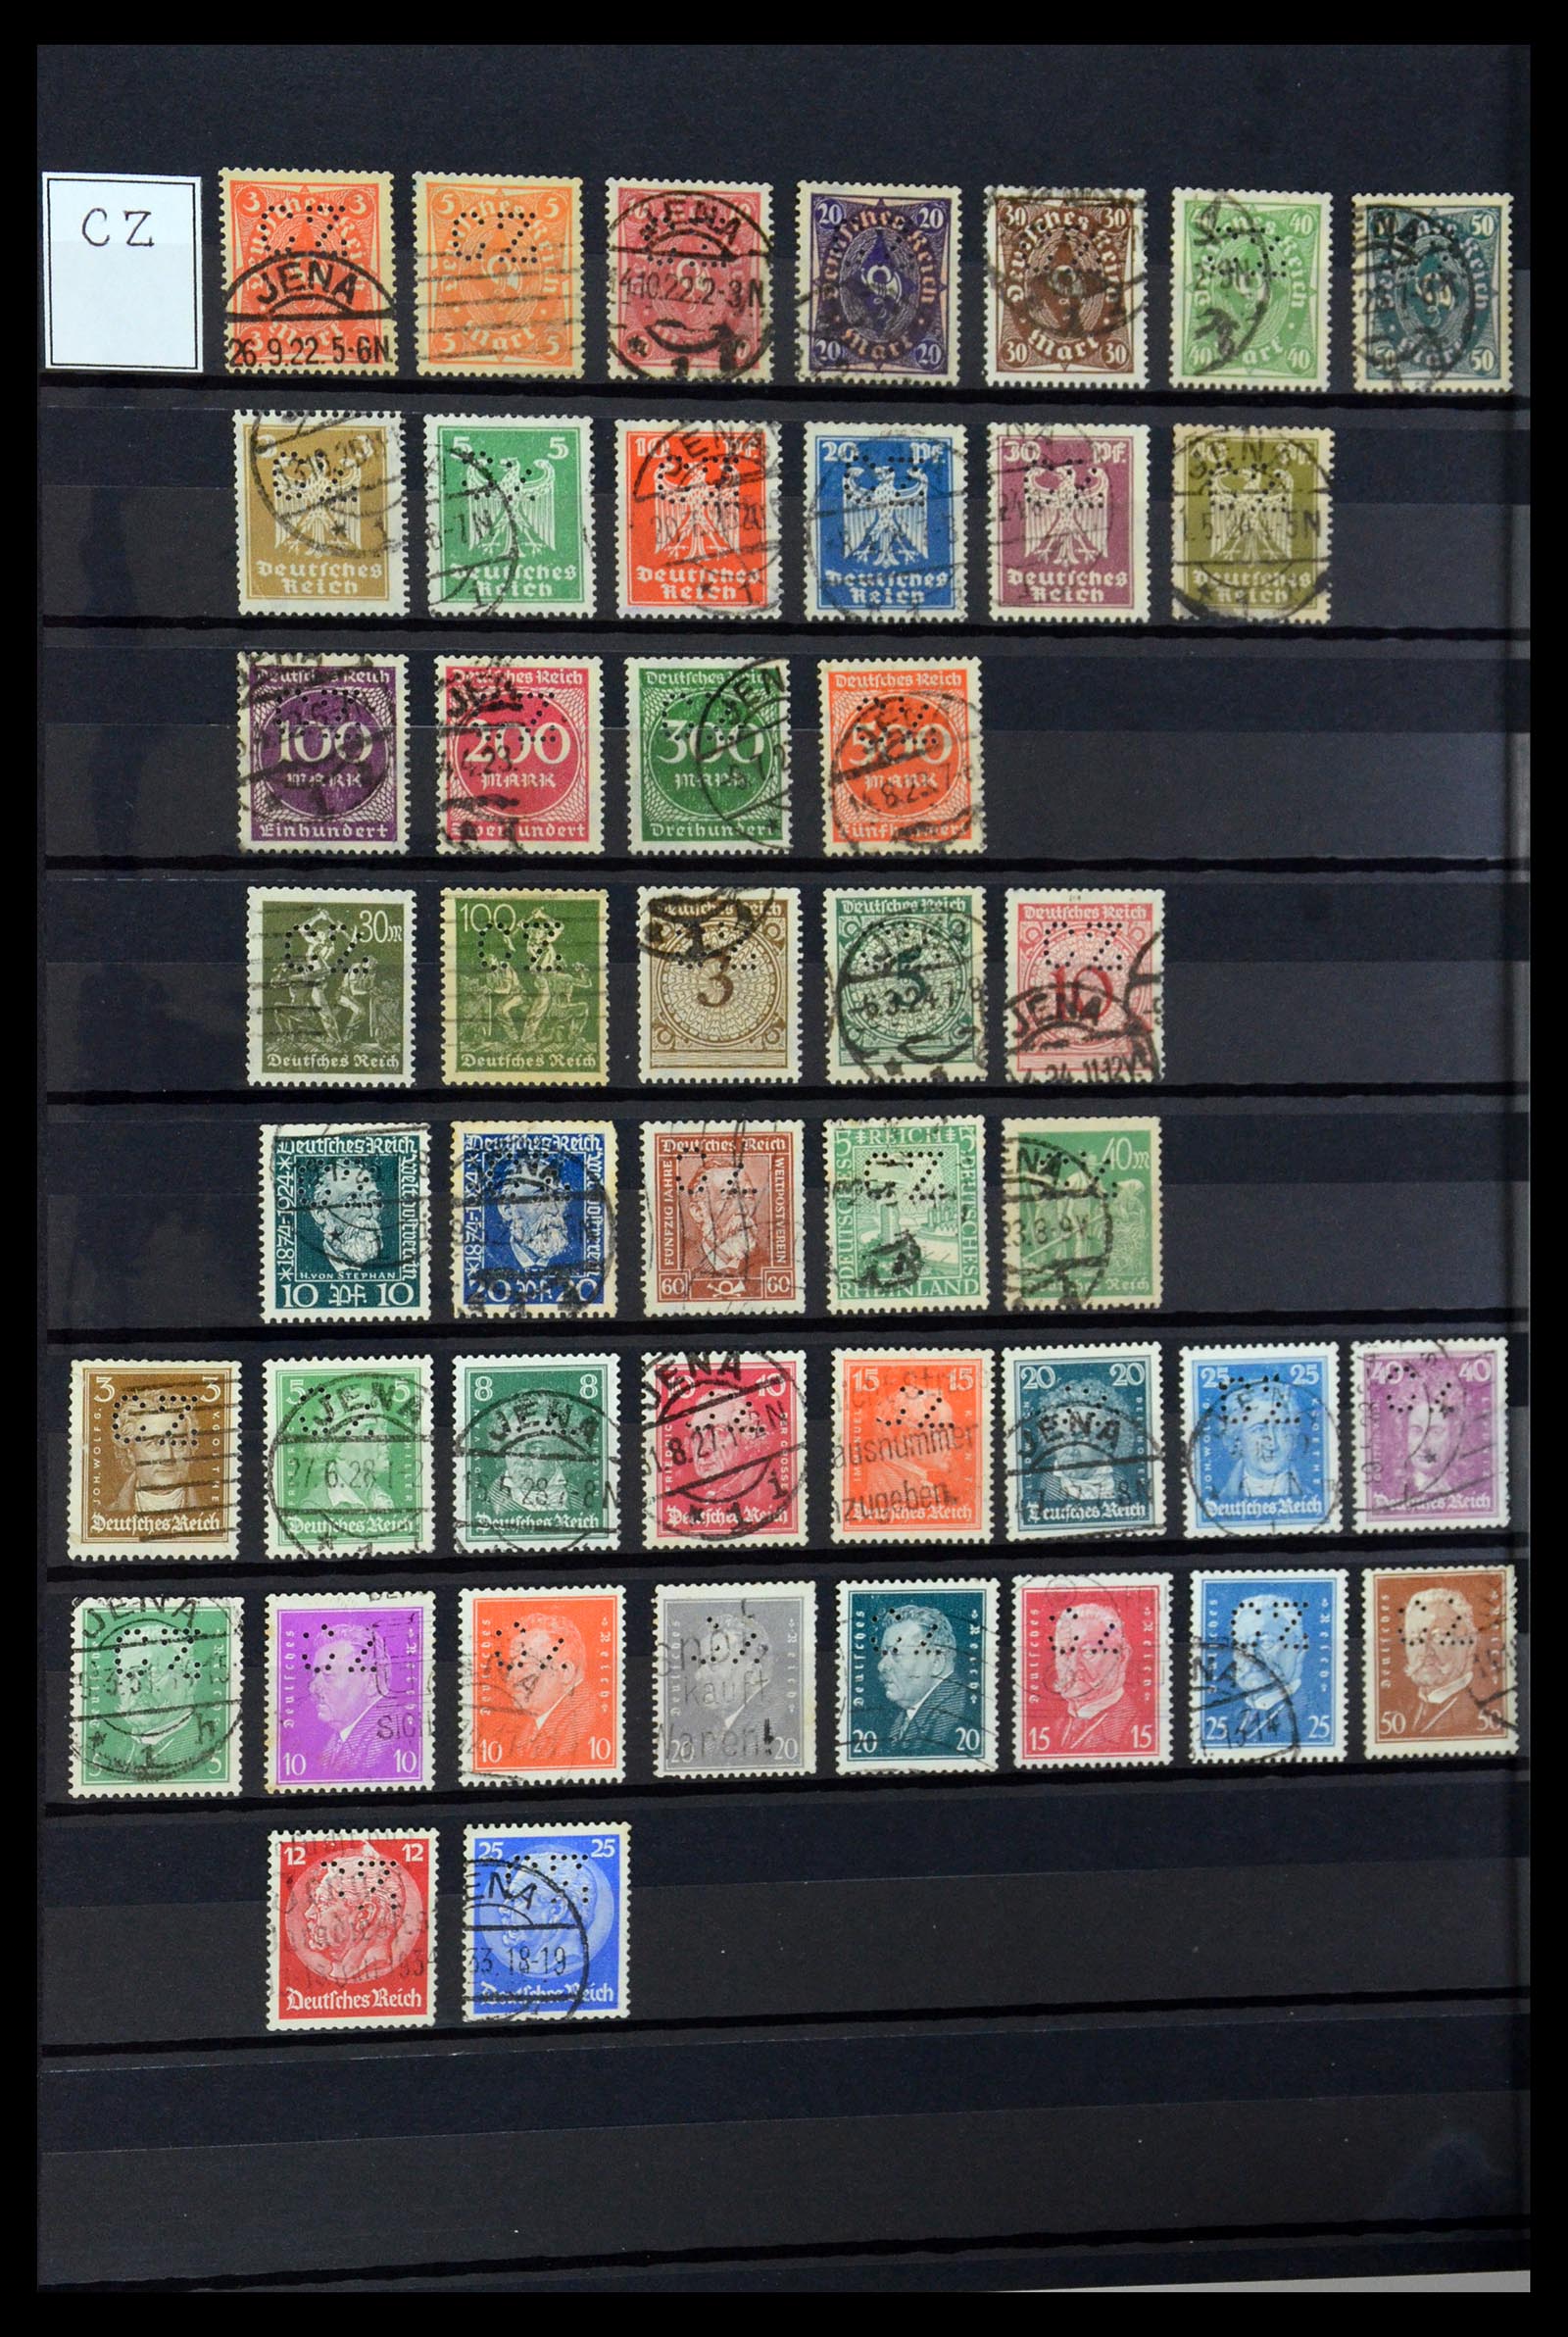 36405 086 - Stamp collection 36405 German Reich perfins 1880-1945.